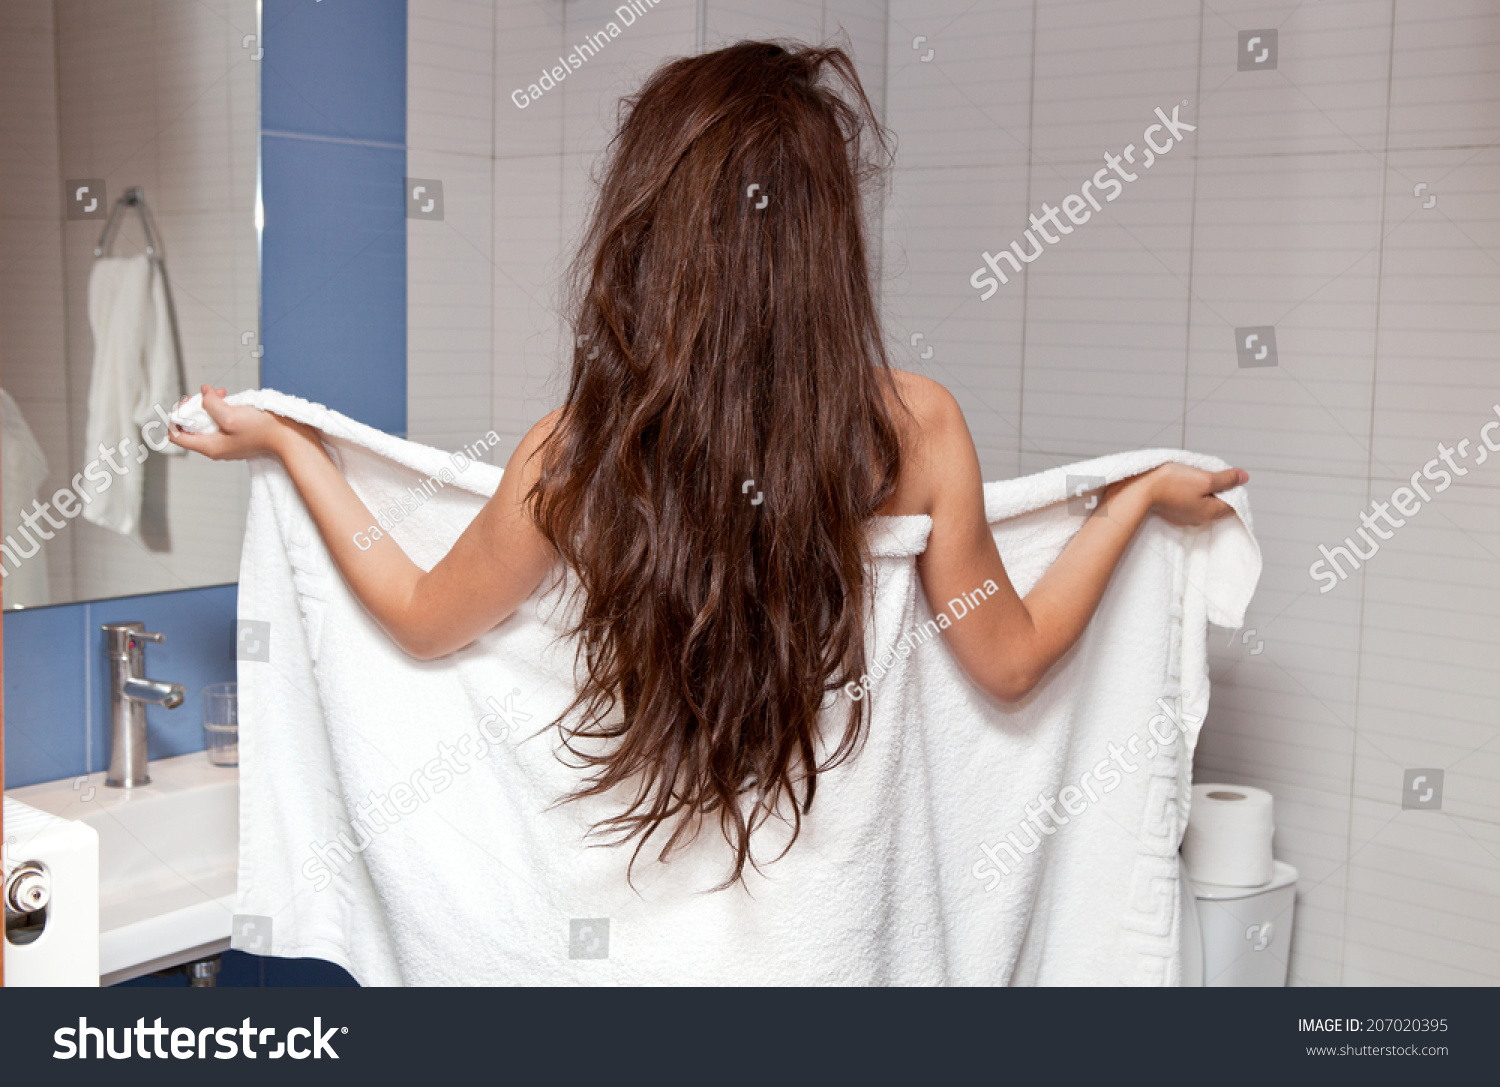 Девушка в полотенце сзади